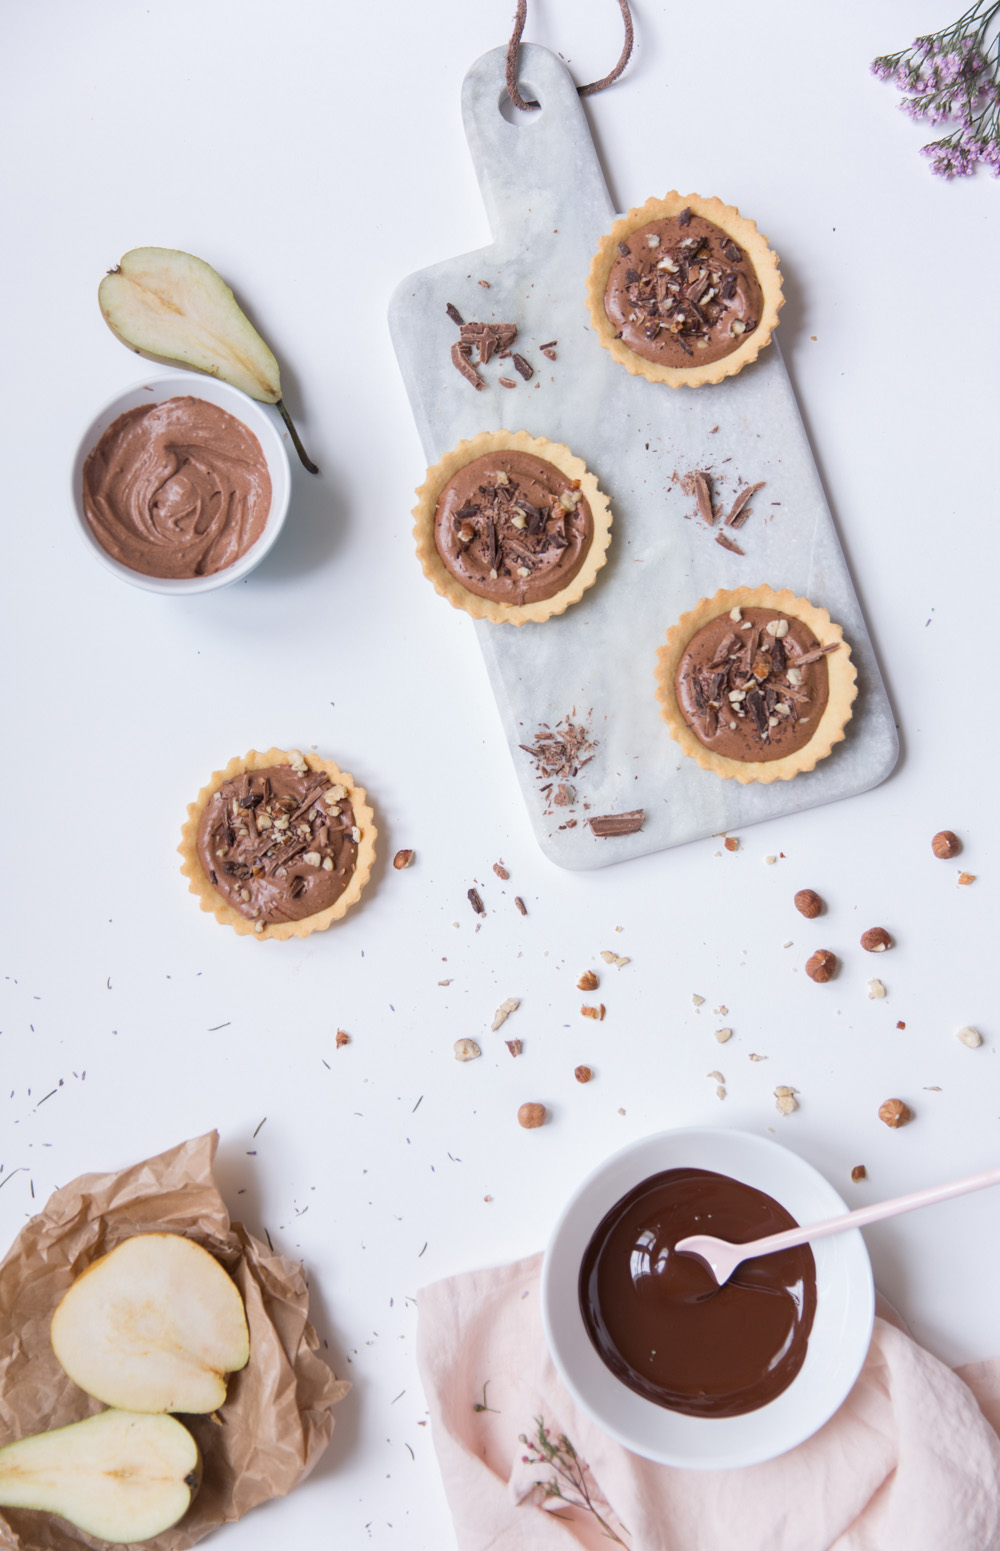 Recette tartelette au chocolat avec ganache montée - mousse au chocolat légère aérienne - blog culinaire cuisine lifestyle paris - photographe culinaire paris